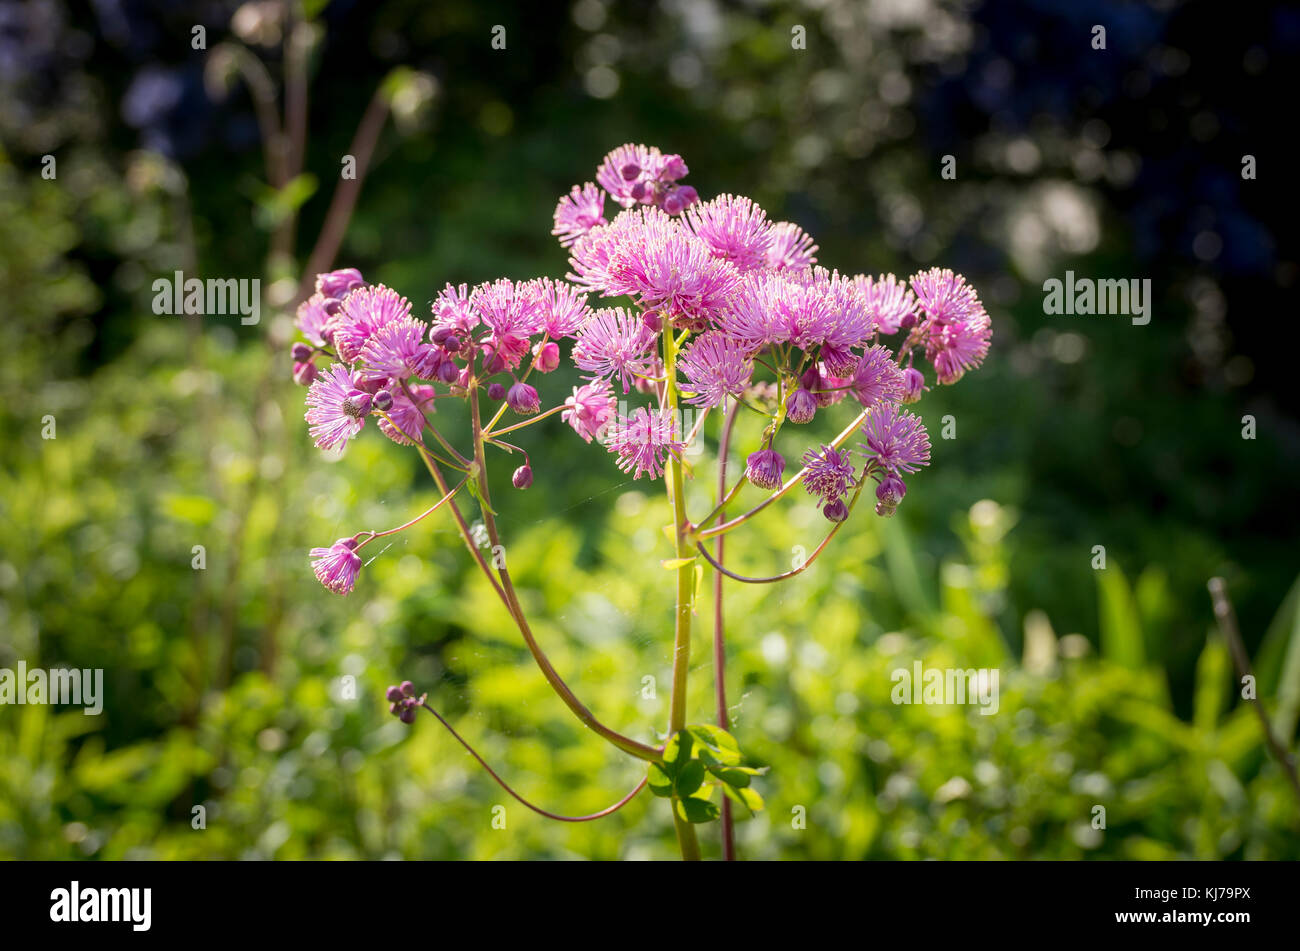 Thalictrum aquilegifolium flowering in May in UK Stock Photo